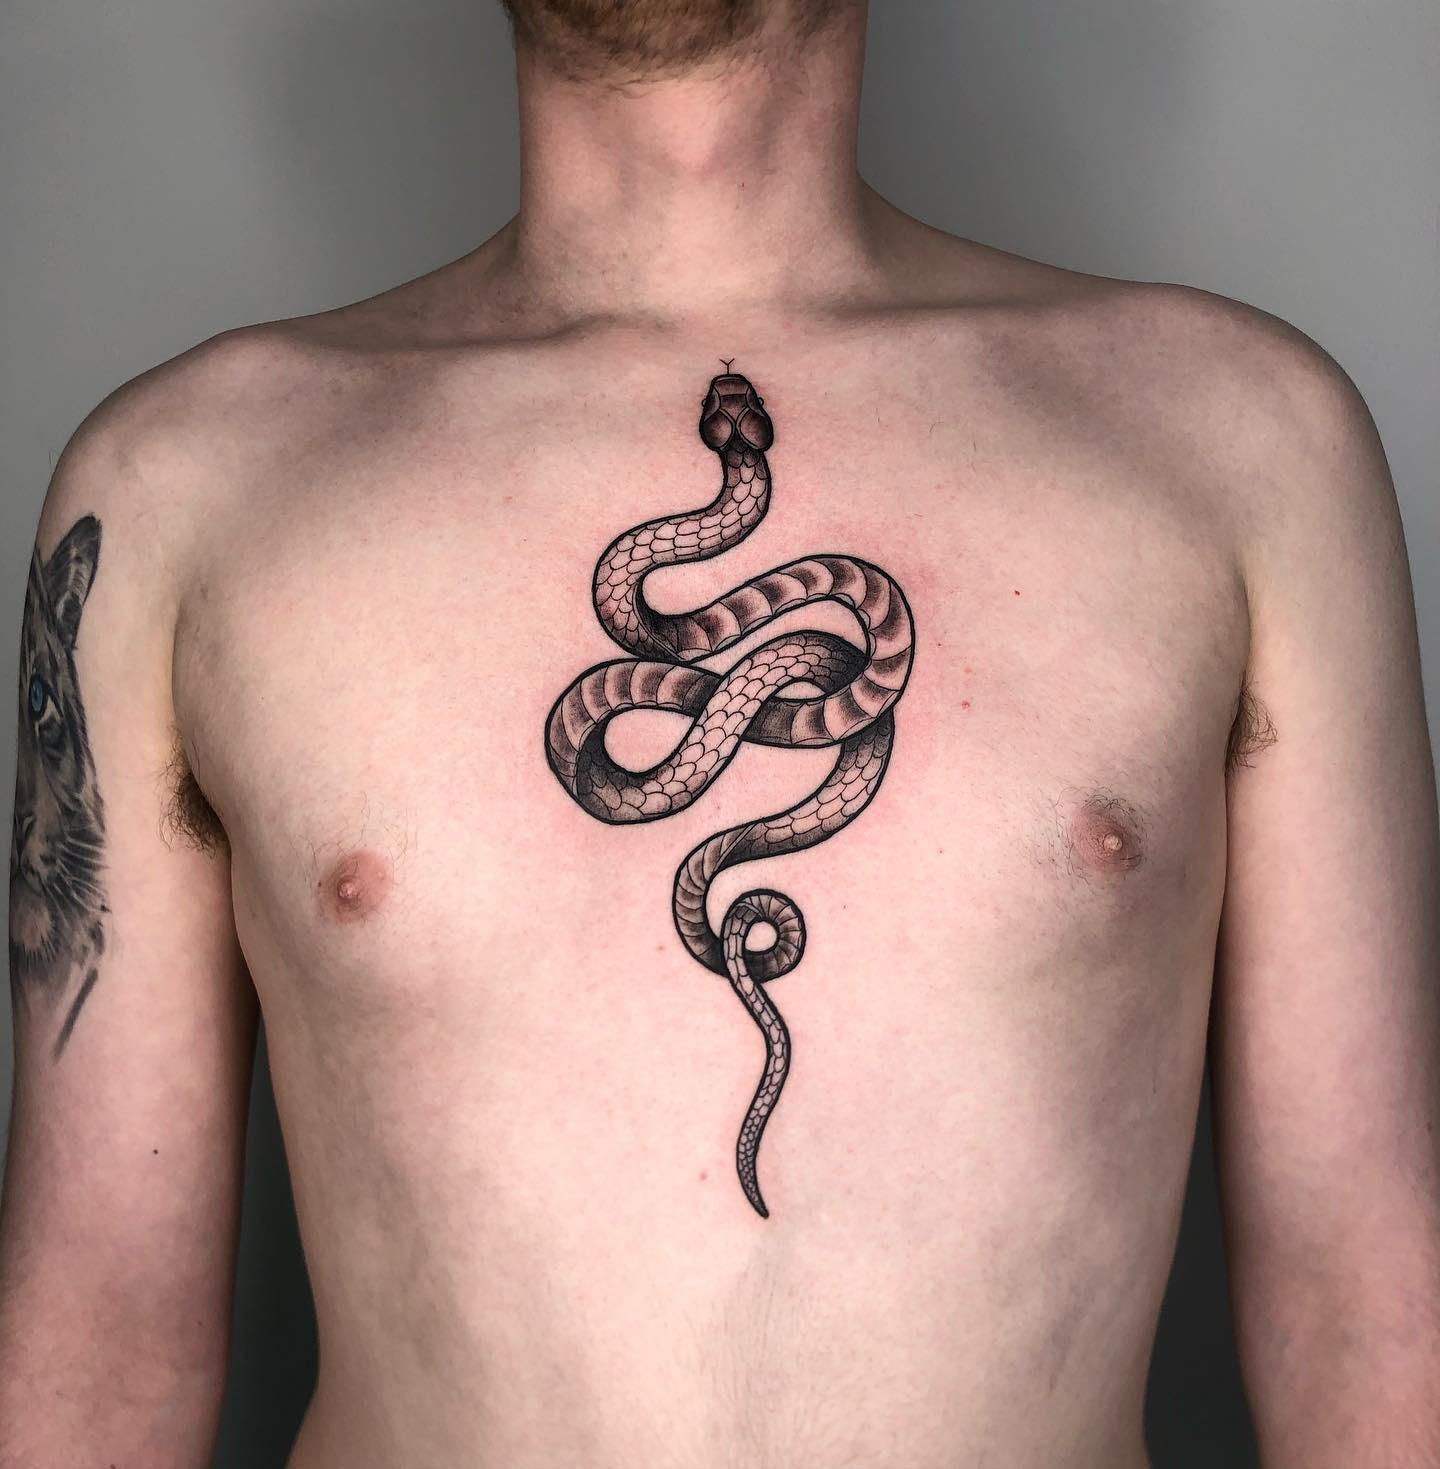 Schlangentattoo auf dem Brustbein